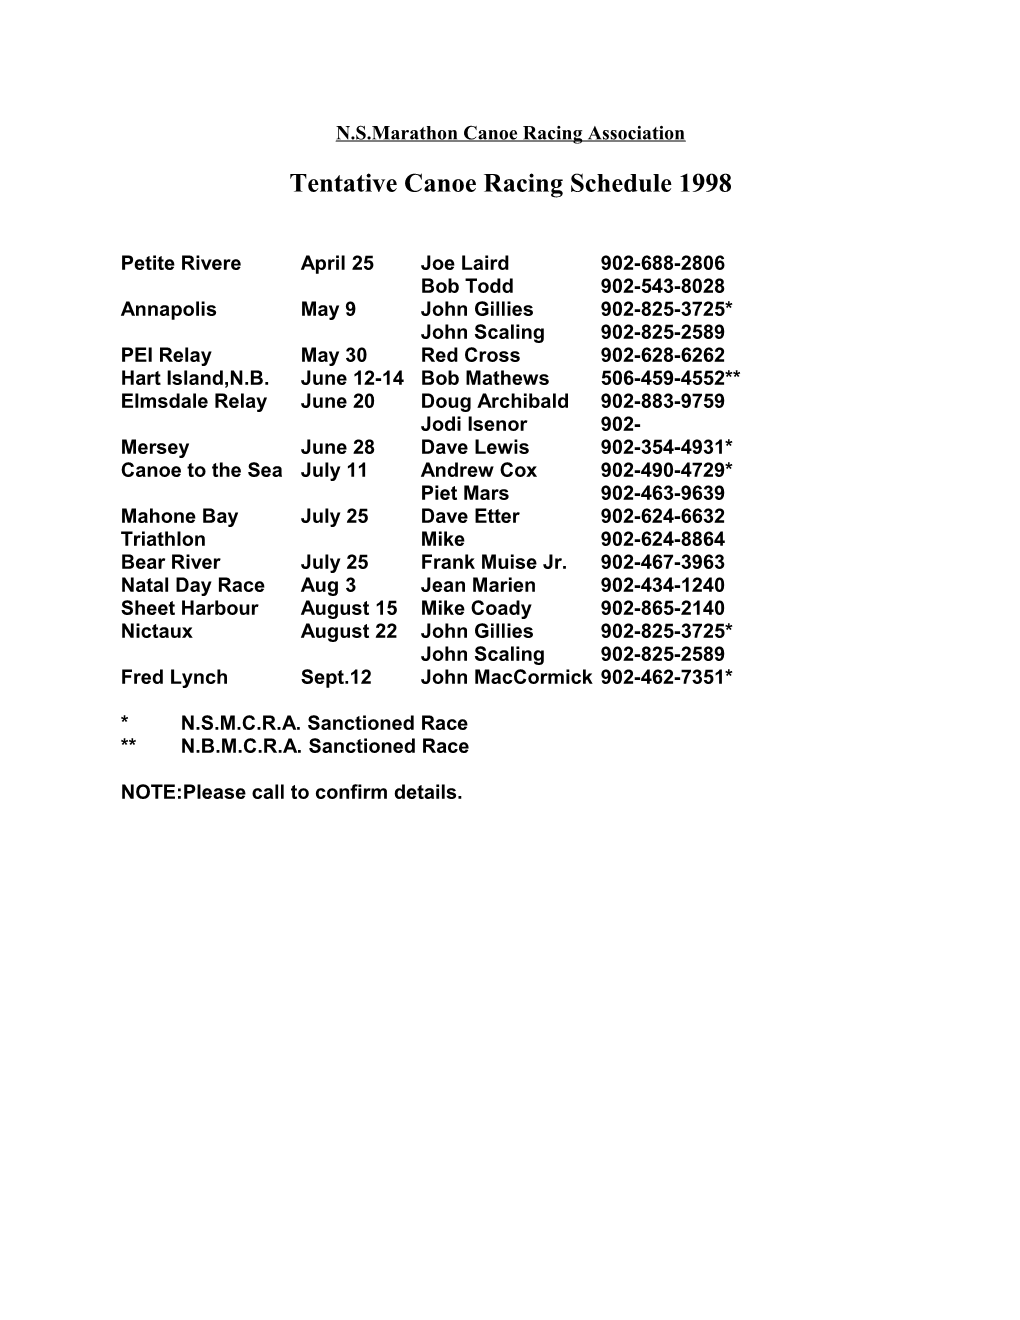 Tentative Canoe Racing Schedule 1998